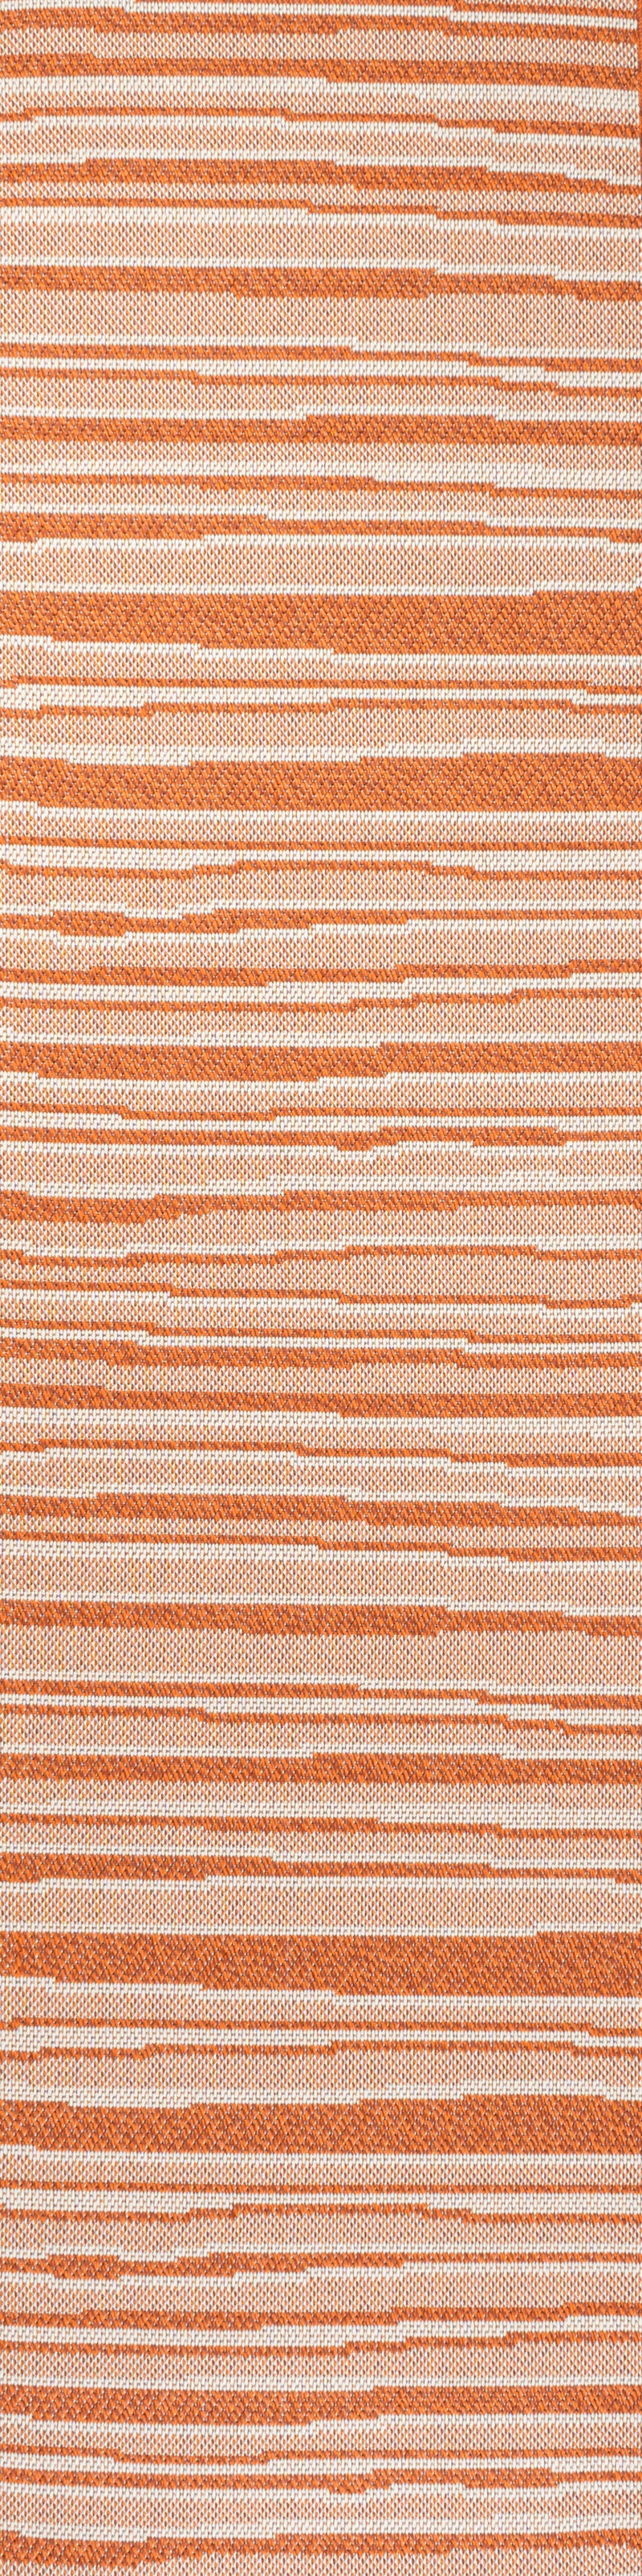 Wavy Stripe Modern Indoor/Outdoor Area Rug (3 Colors, 5 Sizes)